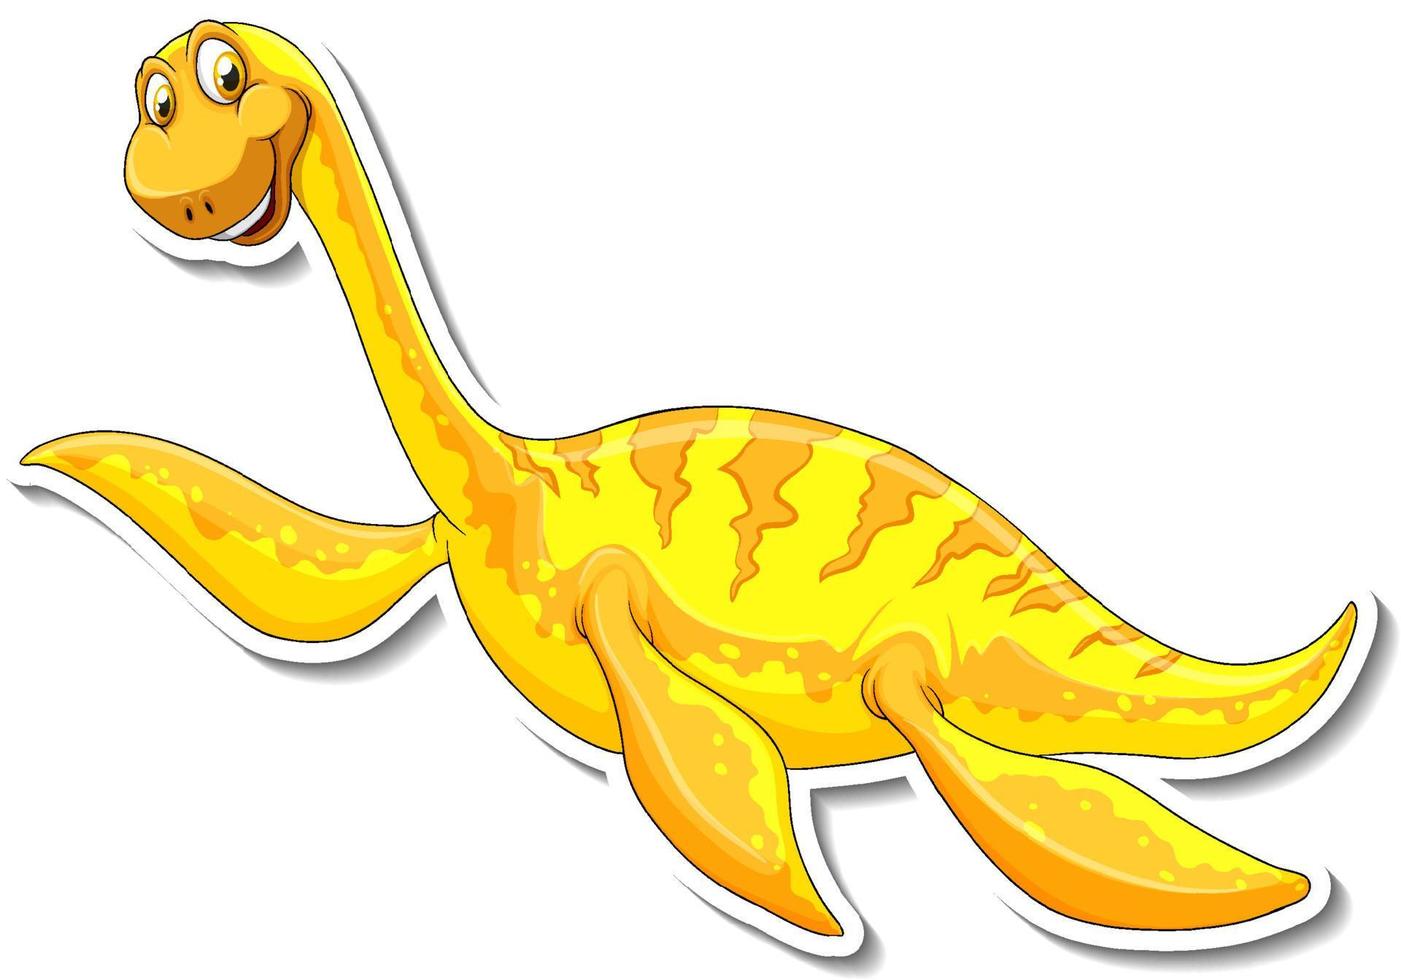 etiqueta engomada del personaje de dibujos animados del dinosaurio elasmosaurus vector